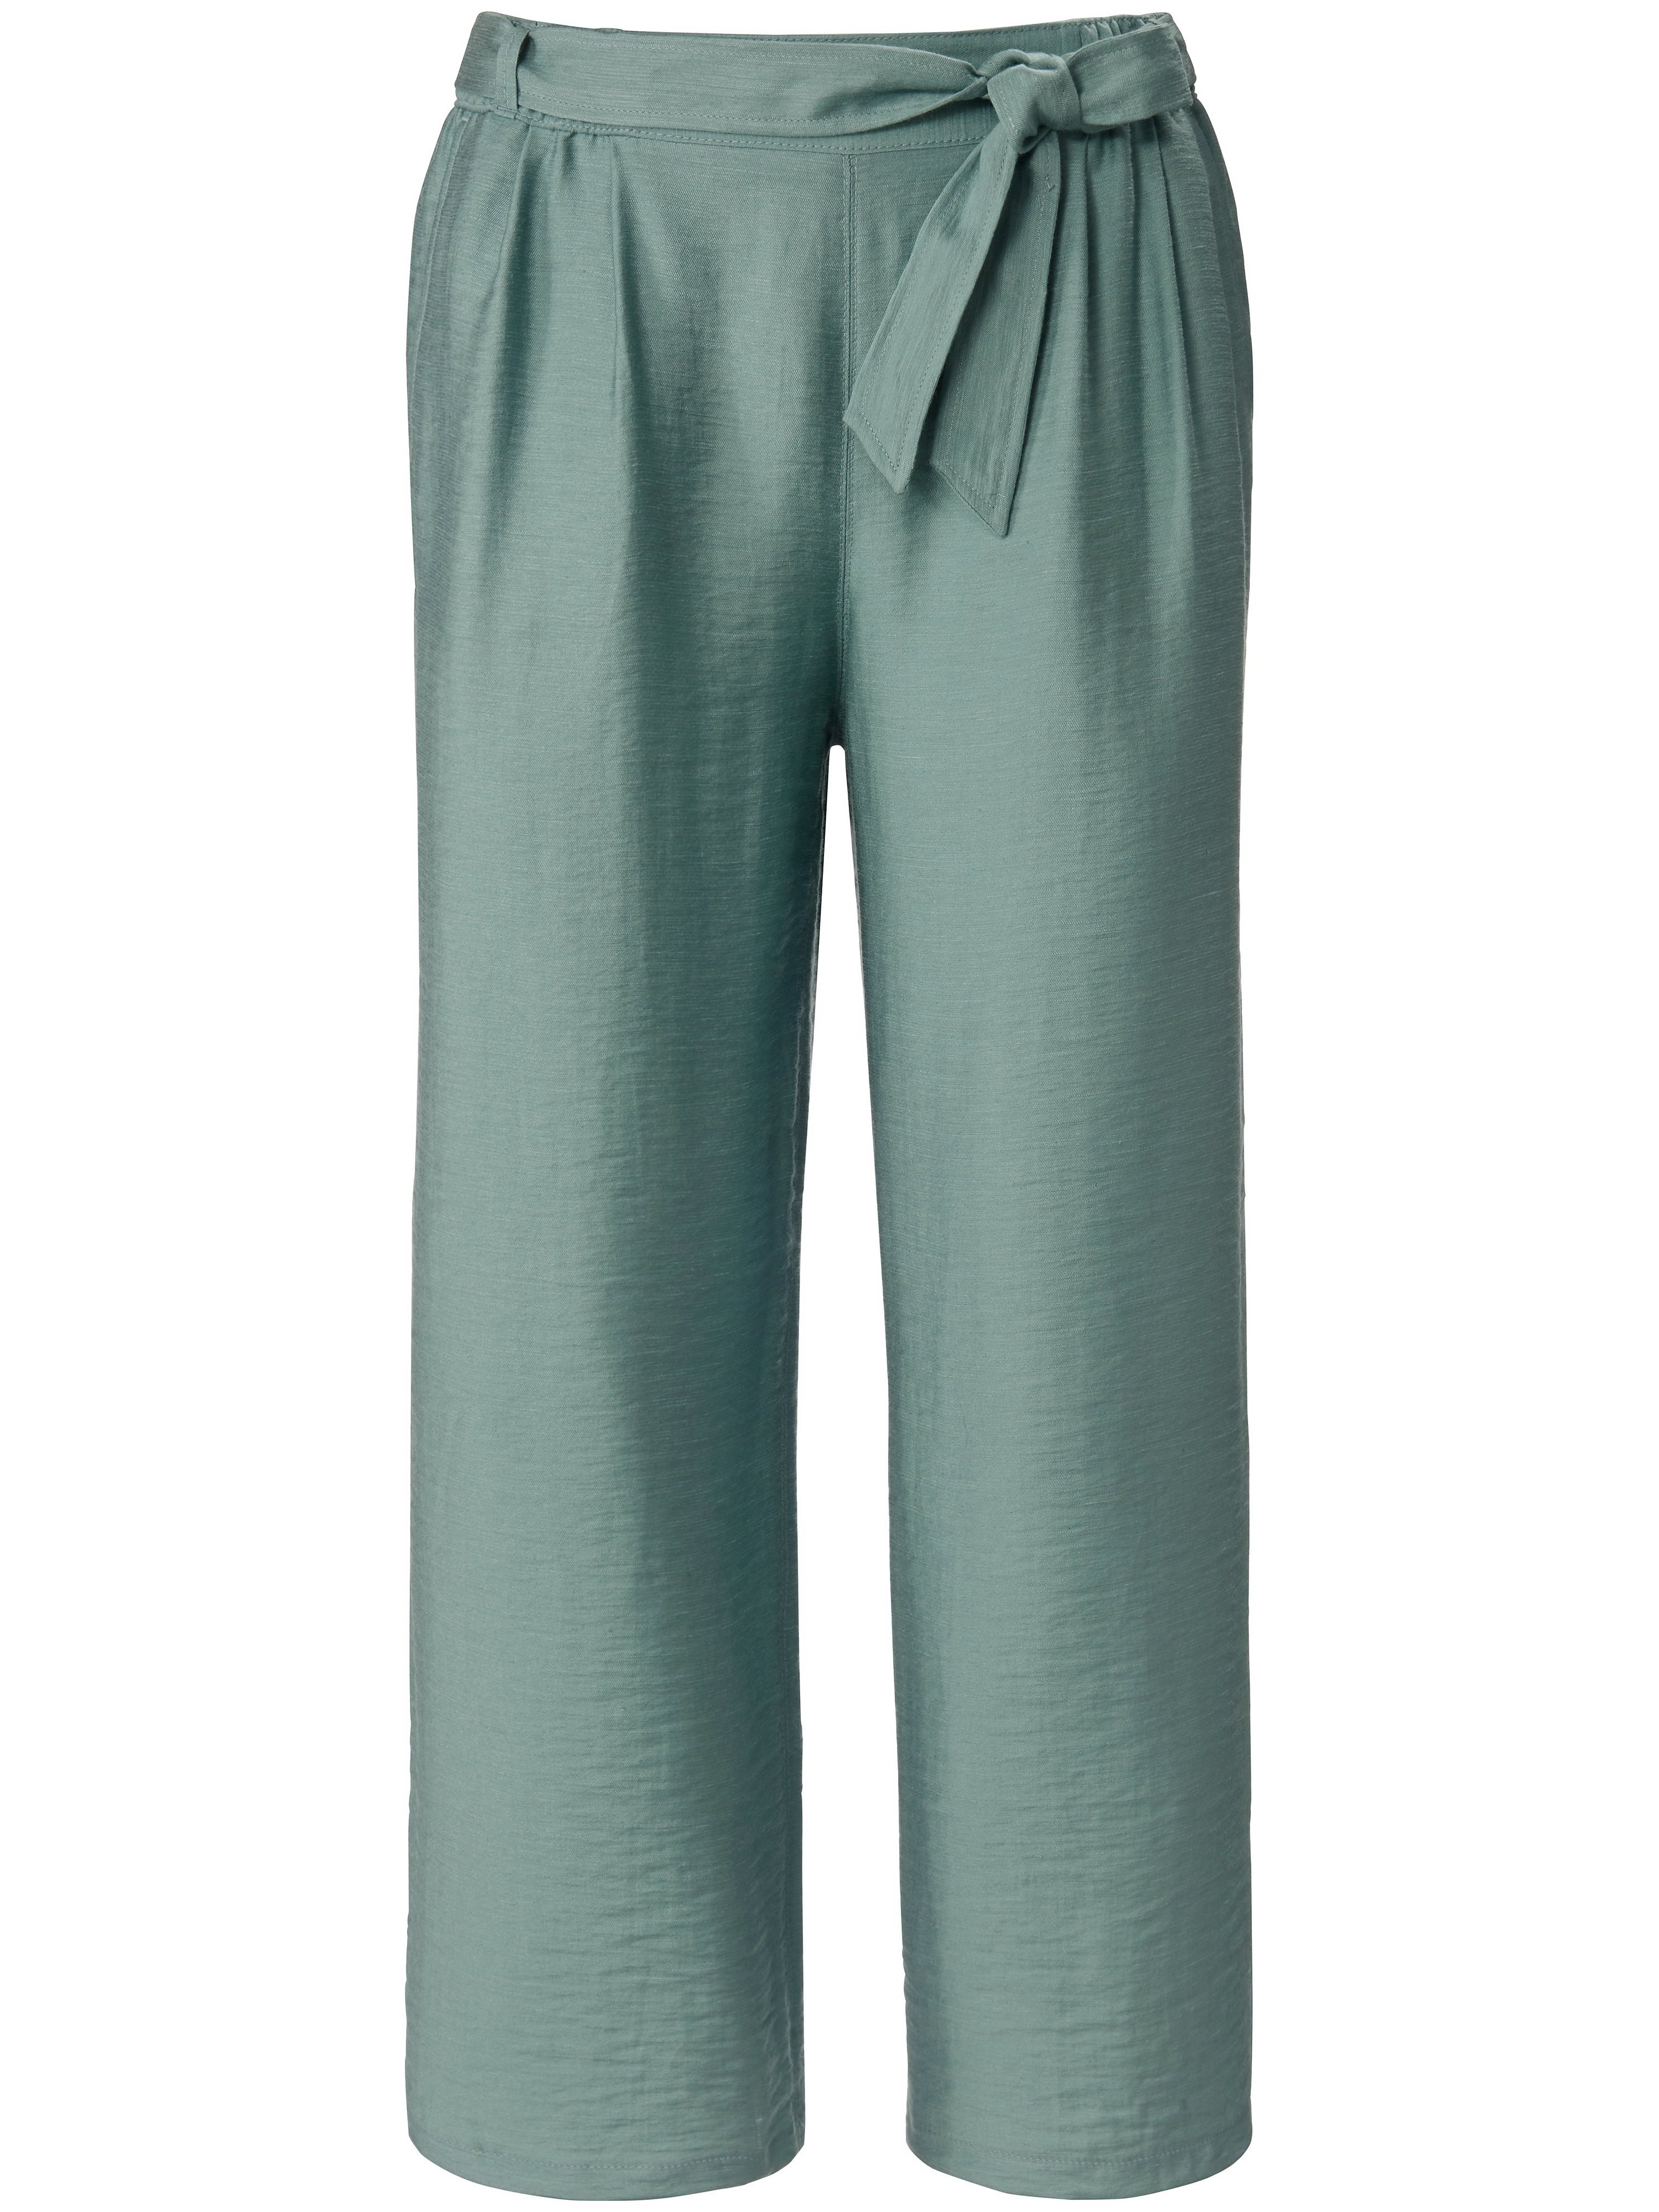 Le pantalon 7/8  Betty Barclay turquoise